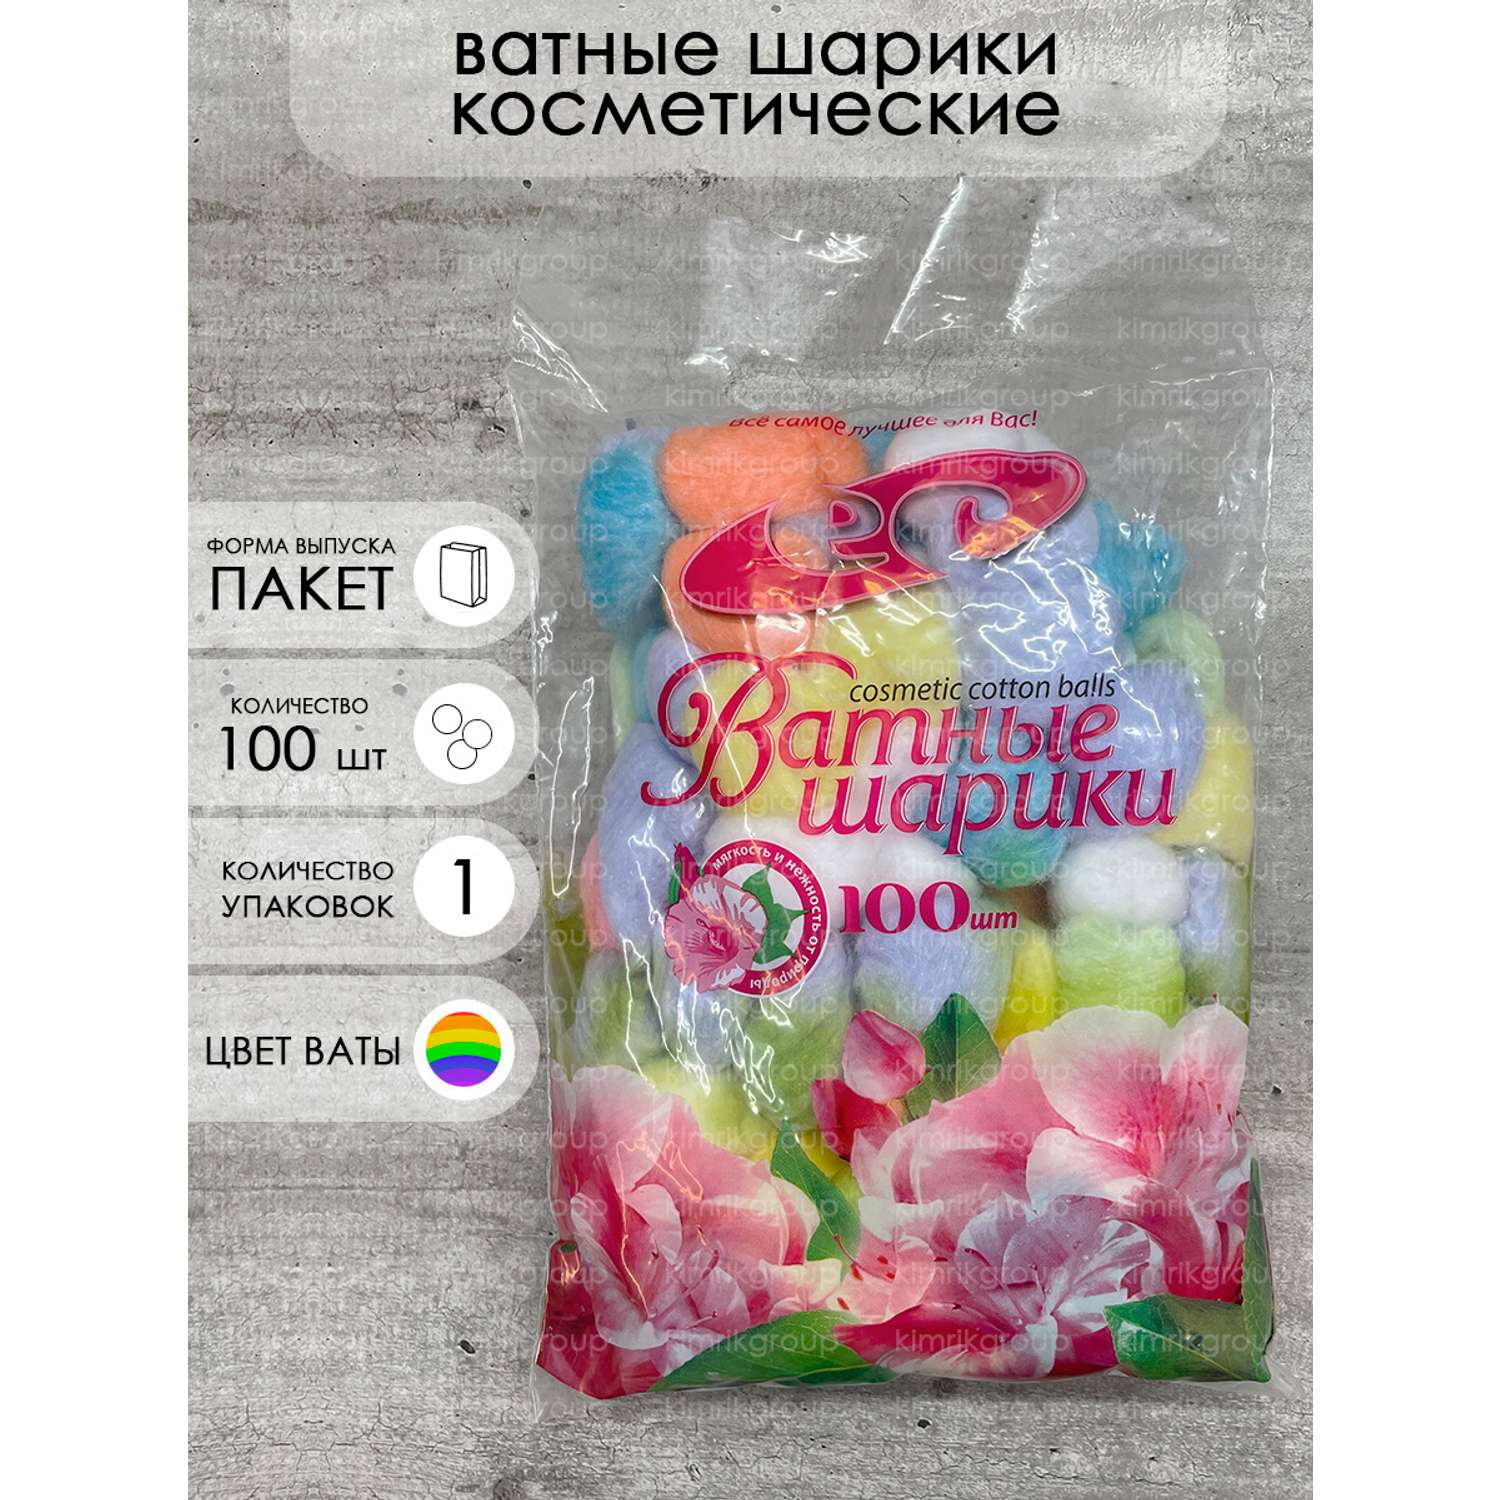 Ватные шарики Емельянъ Савостинъ цветные косметические нестерильные 100 шт - фото 2